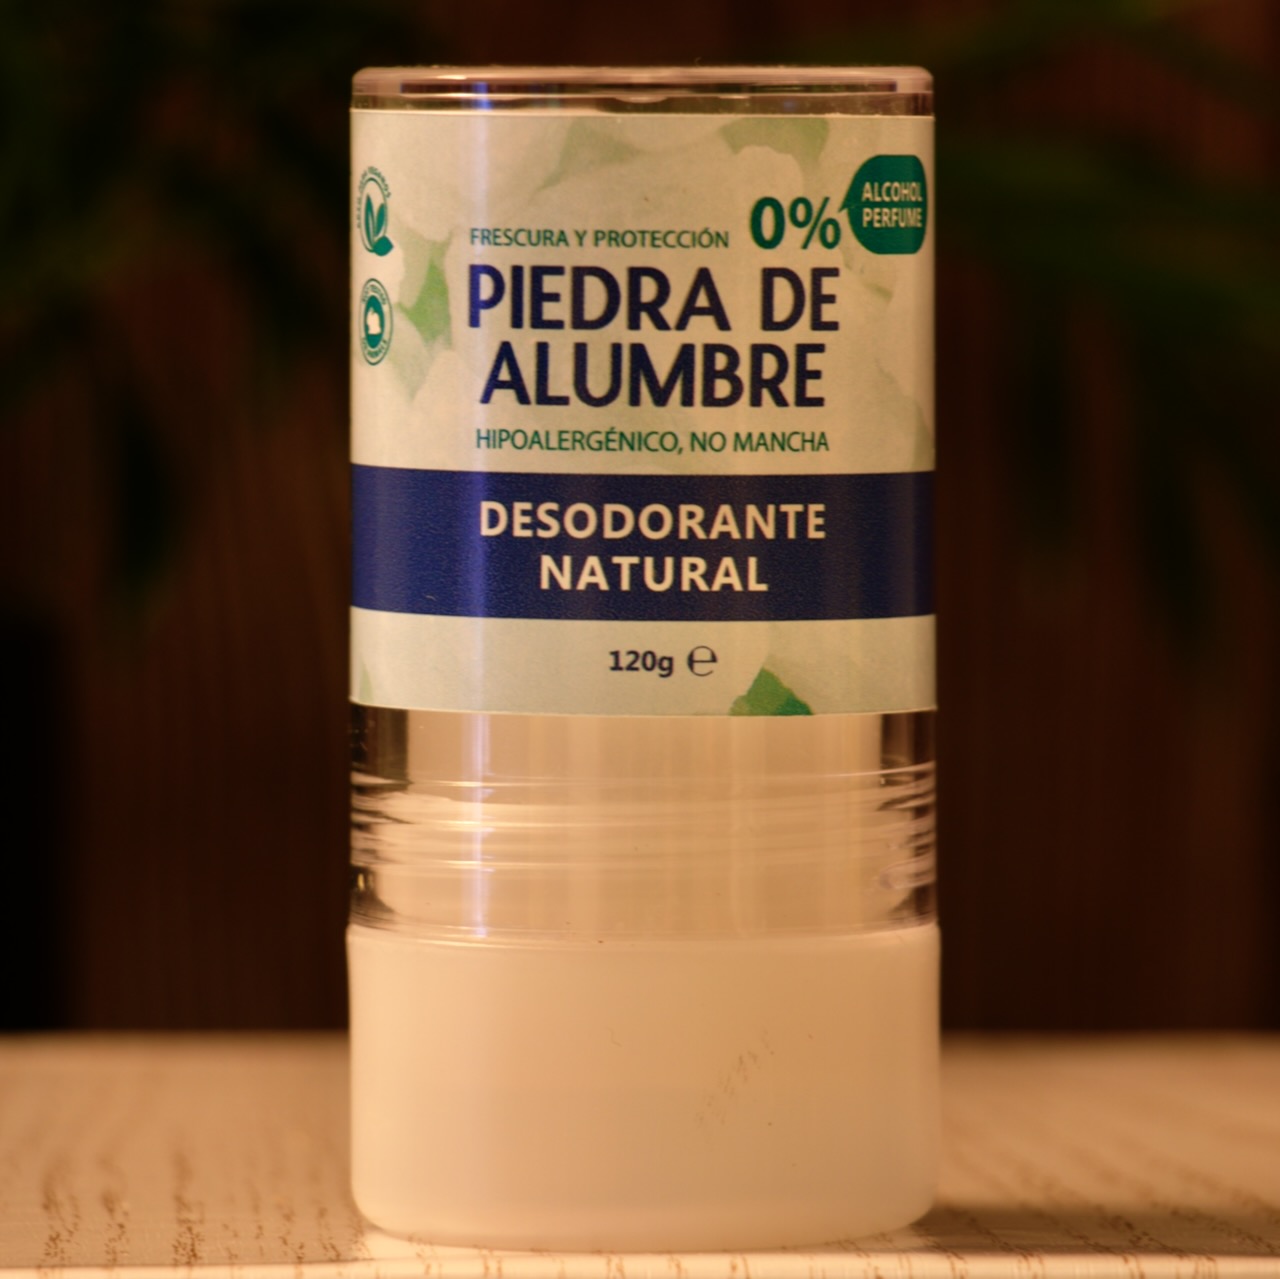 Desodorante natural de piedra de alumbre